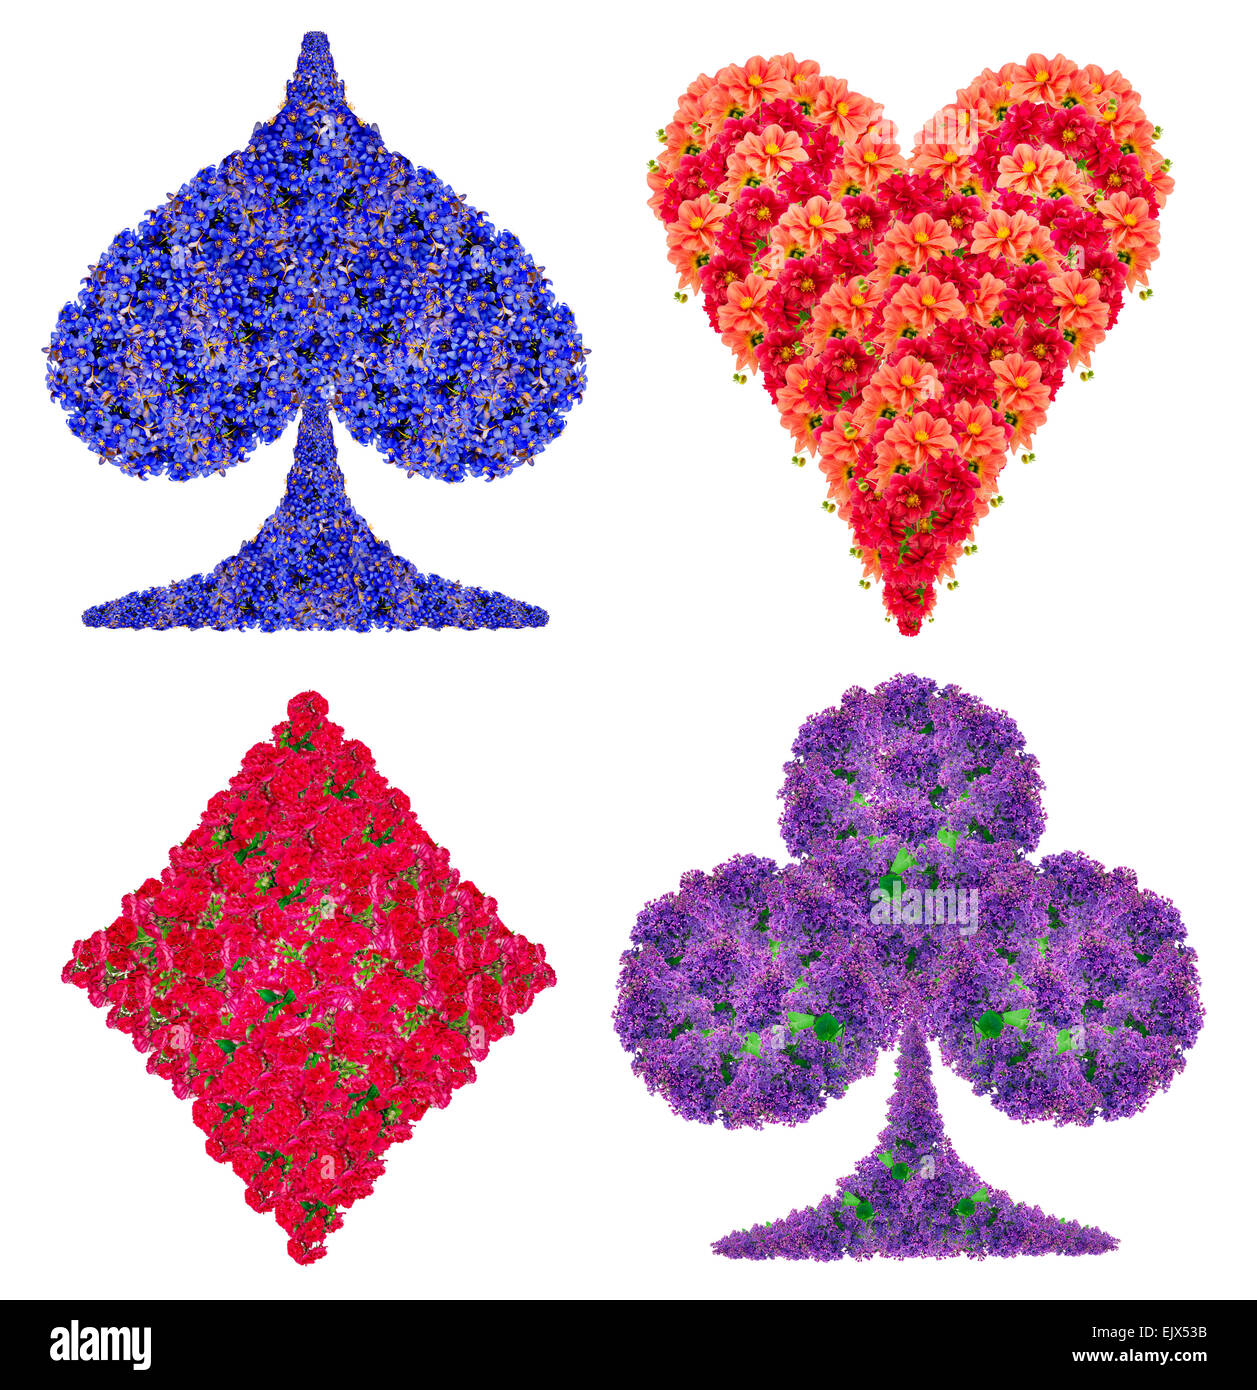 Carte à jouer à jeu de symboles abstraits faits à partir de fleurs rouge et bleu. Collage isolé fait main Banque D'Images